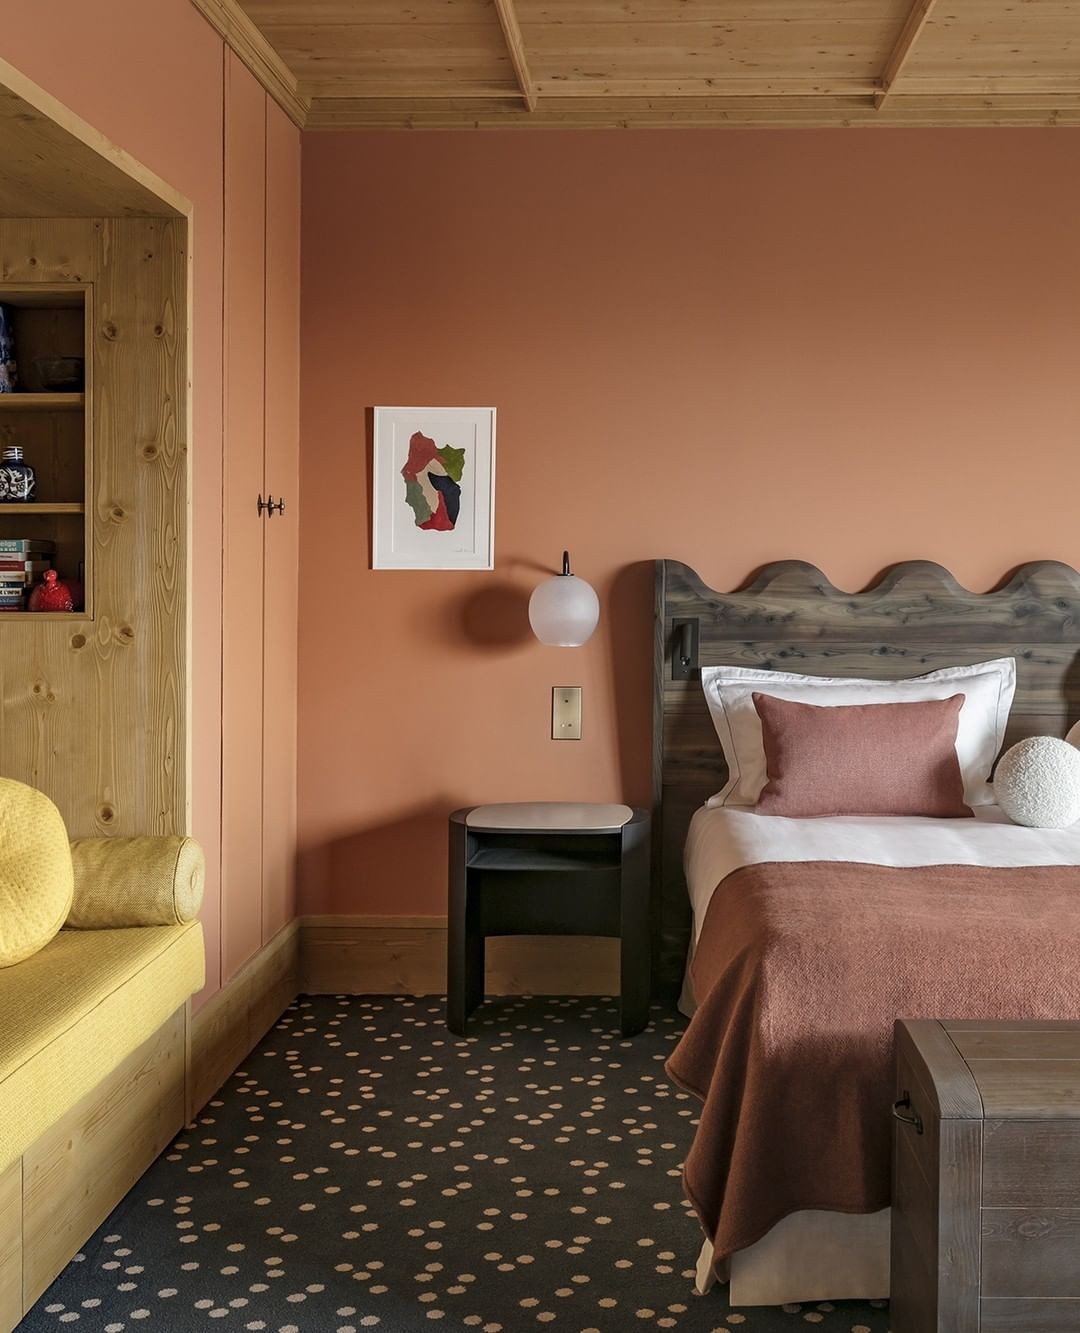 Décor do dia: quarto rosa com madeira clara e póas (Foto: JÉRÔME GALLAND / DIVULGAÇÃO)